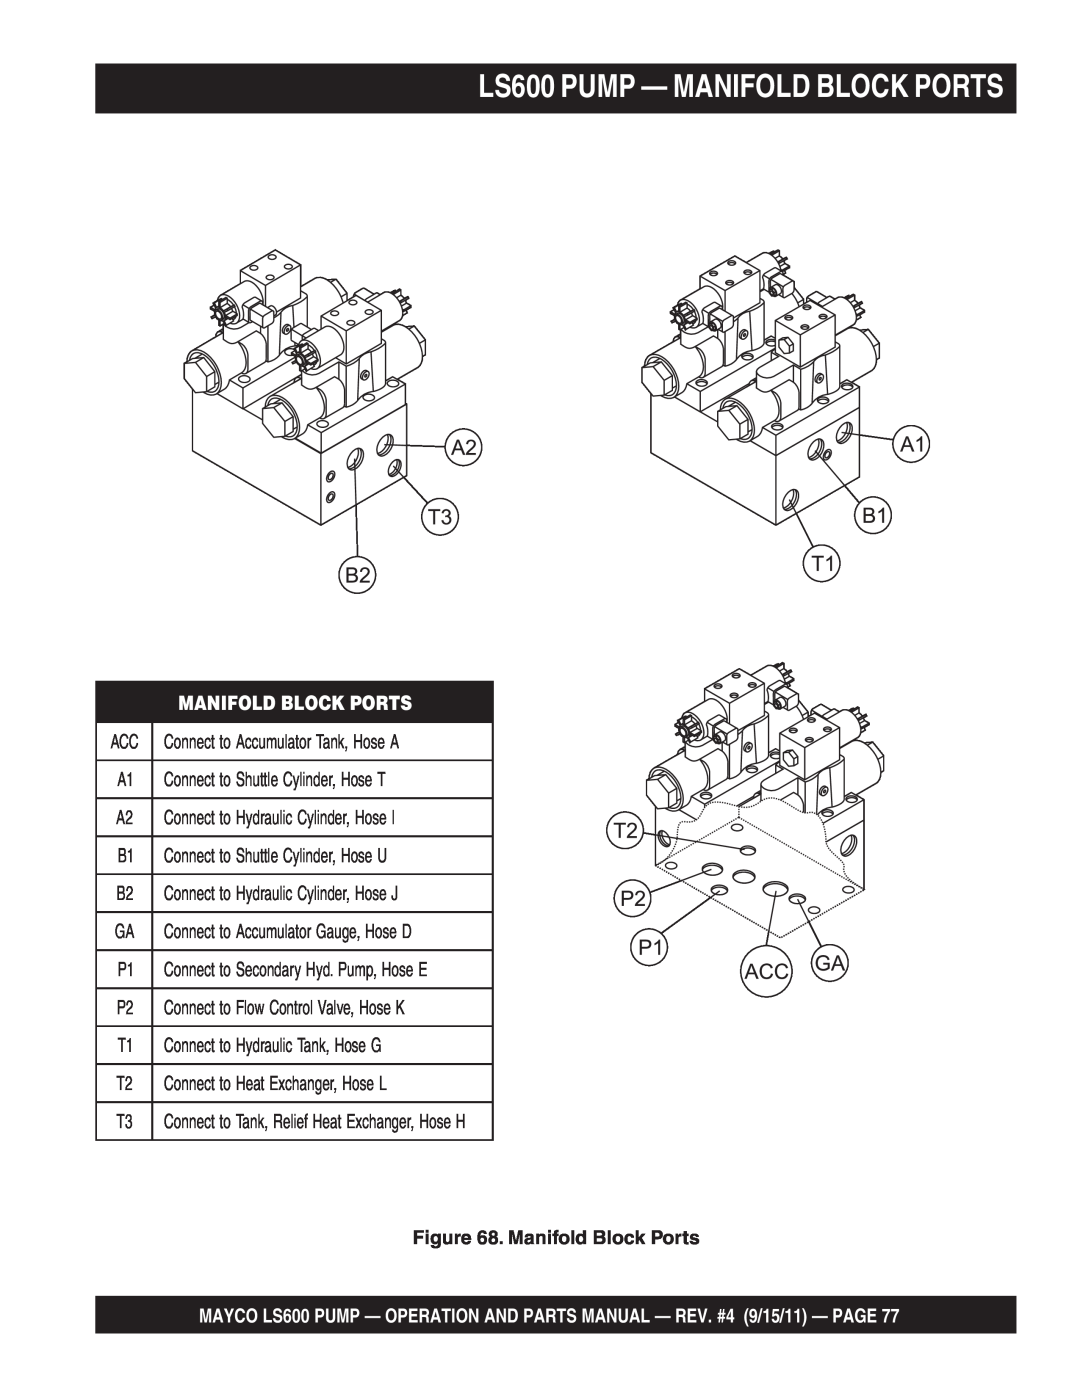 Multiquip manual LS600 PUMP — MANIFOLD BLOCK PORTS, Manifold Block Ports 